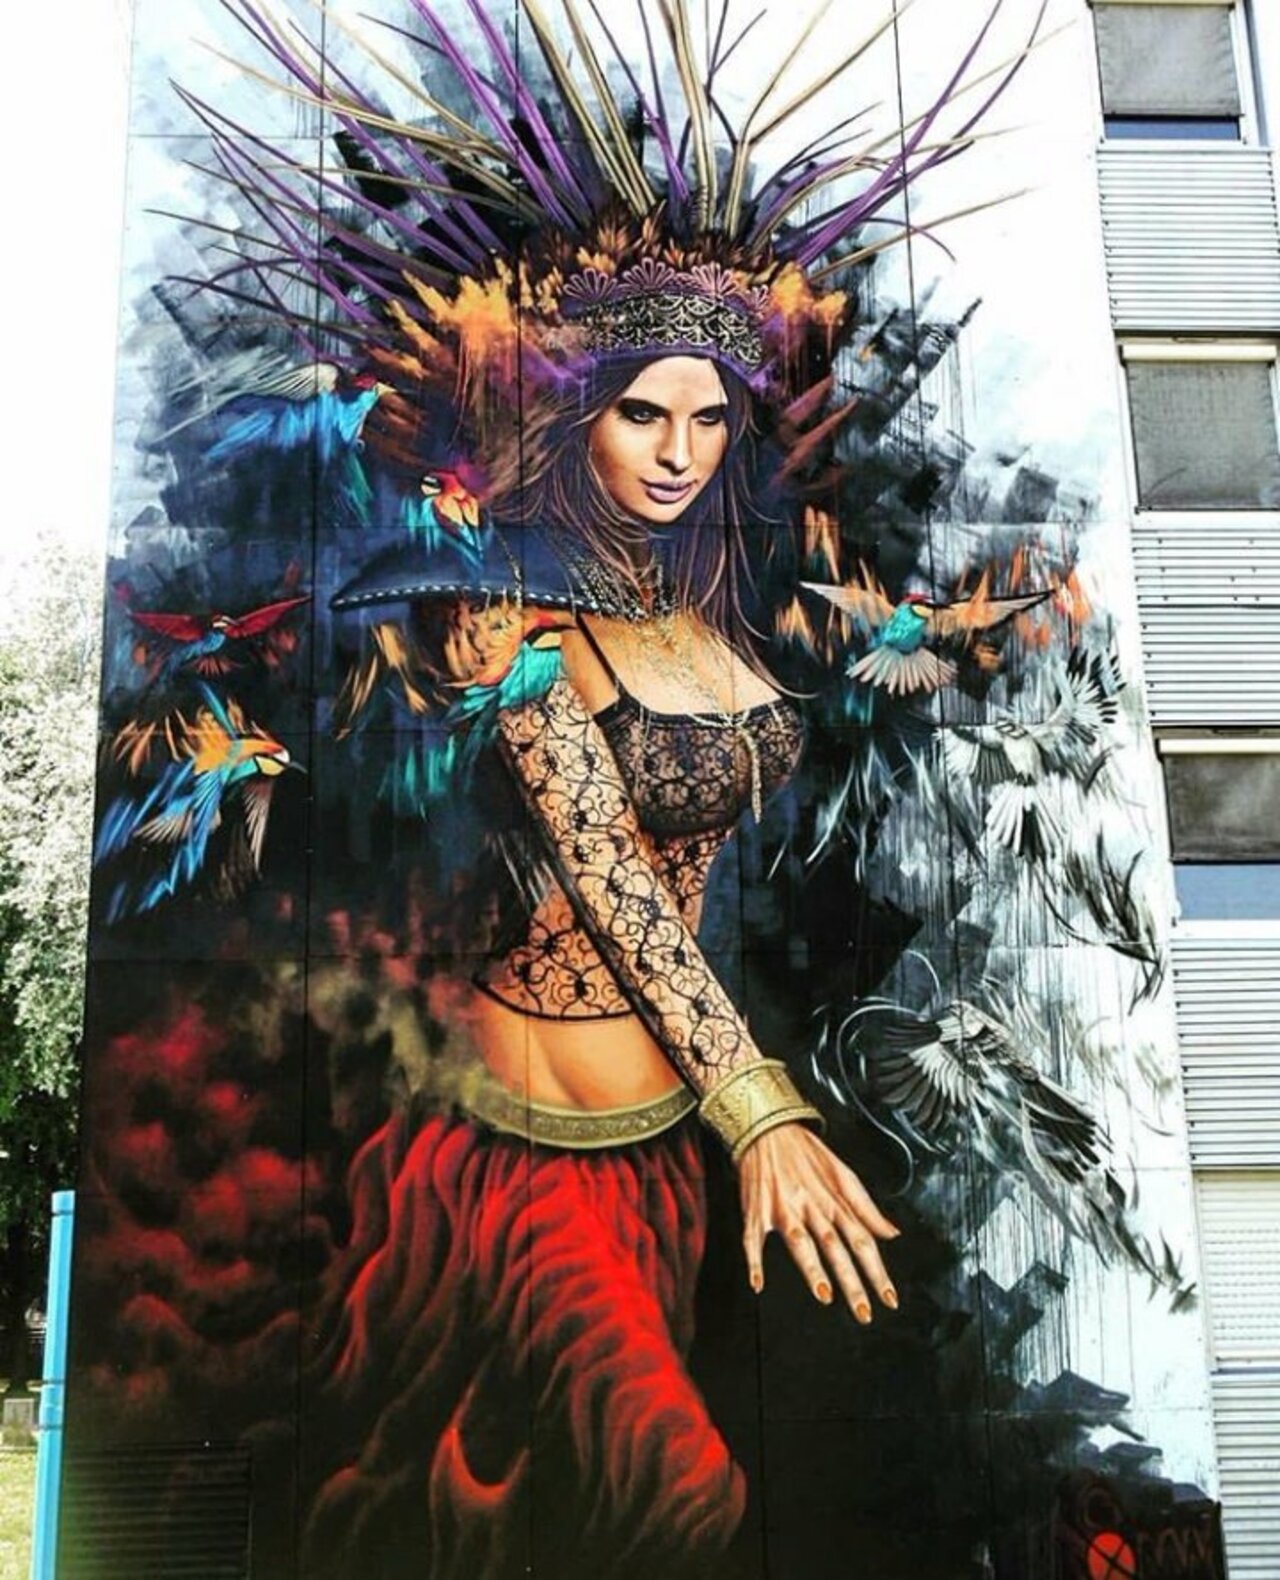 P.W.A. love it..... #Streetart #graffiti #mural #art https://t.co/ykNgzYFPAv